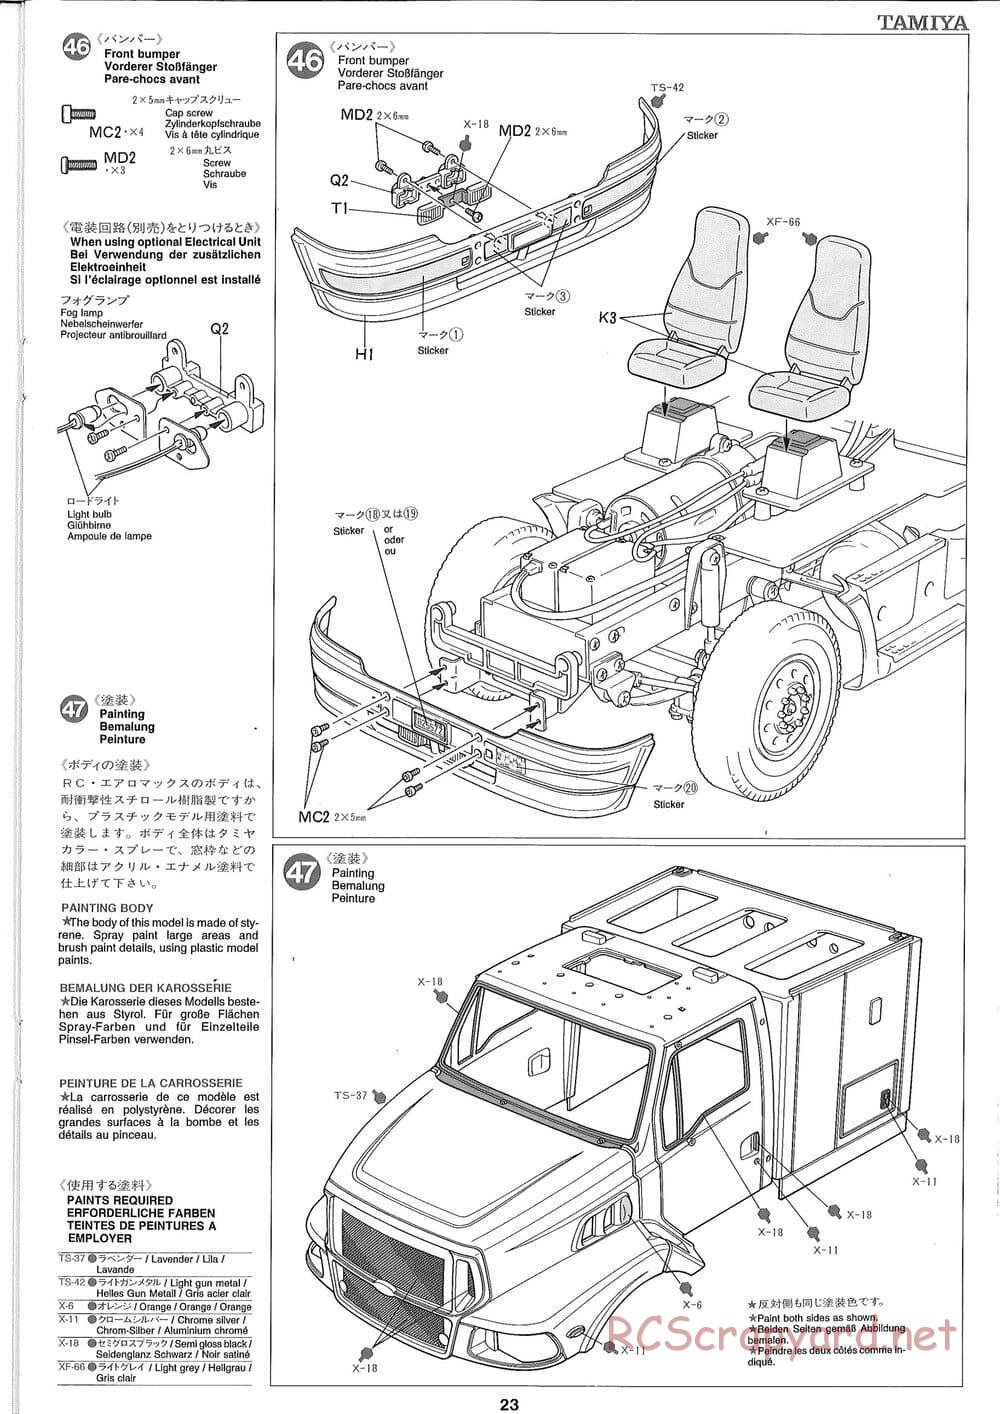 Tamiya - Ford Aeromax - Manual - Page 23